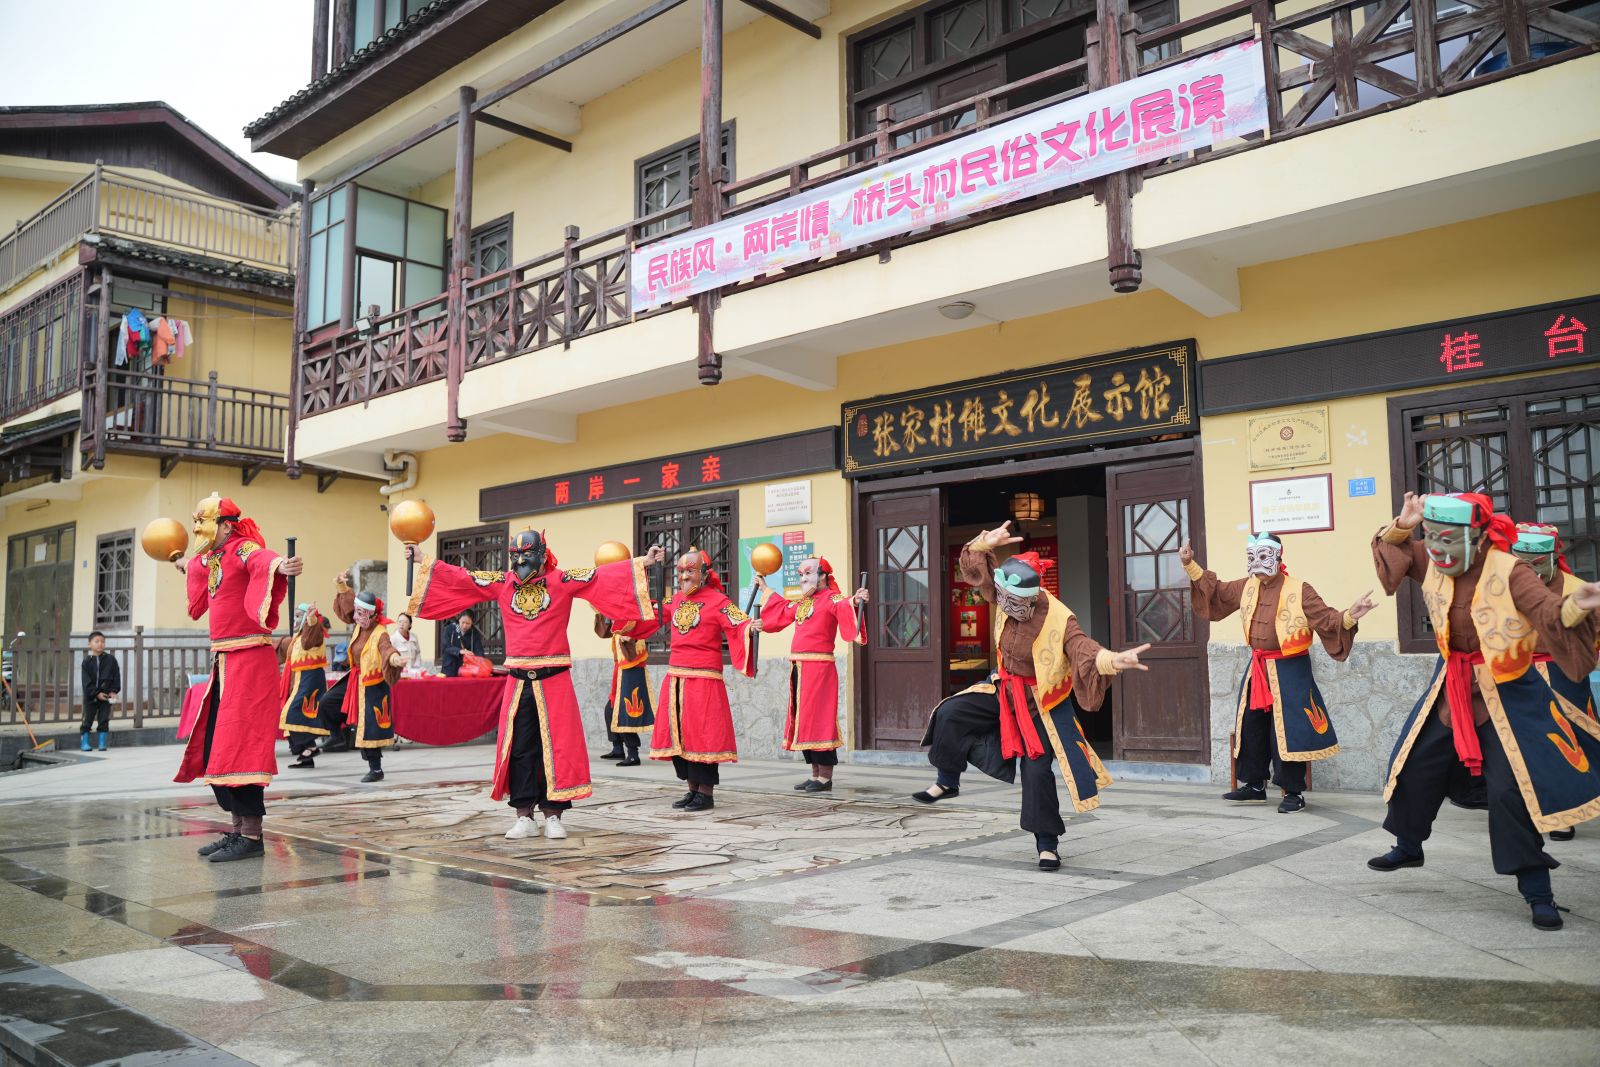 傳統儺舞文化表演。